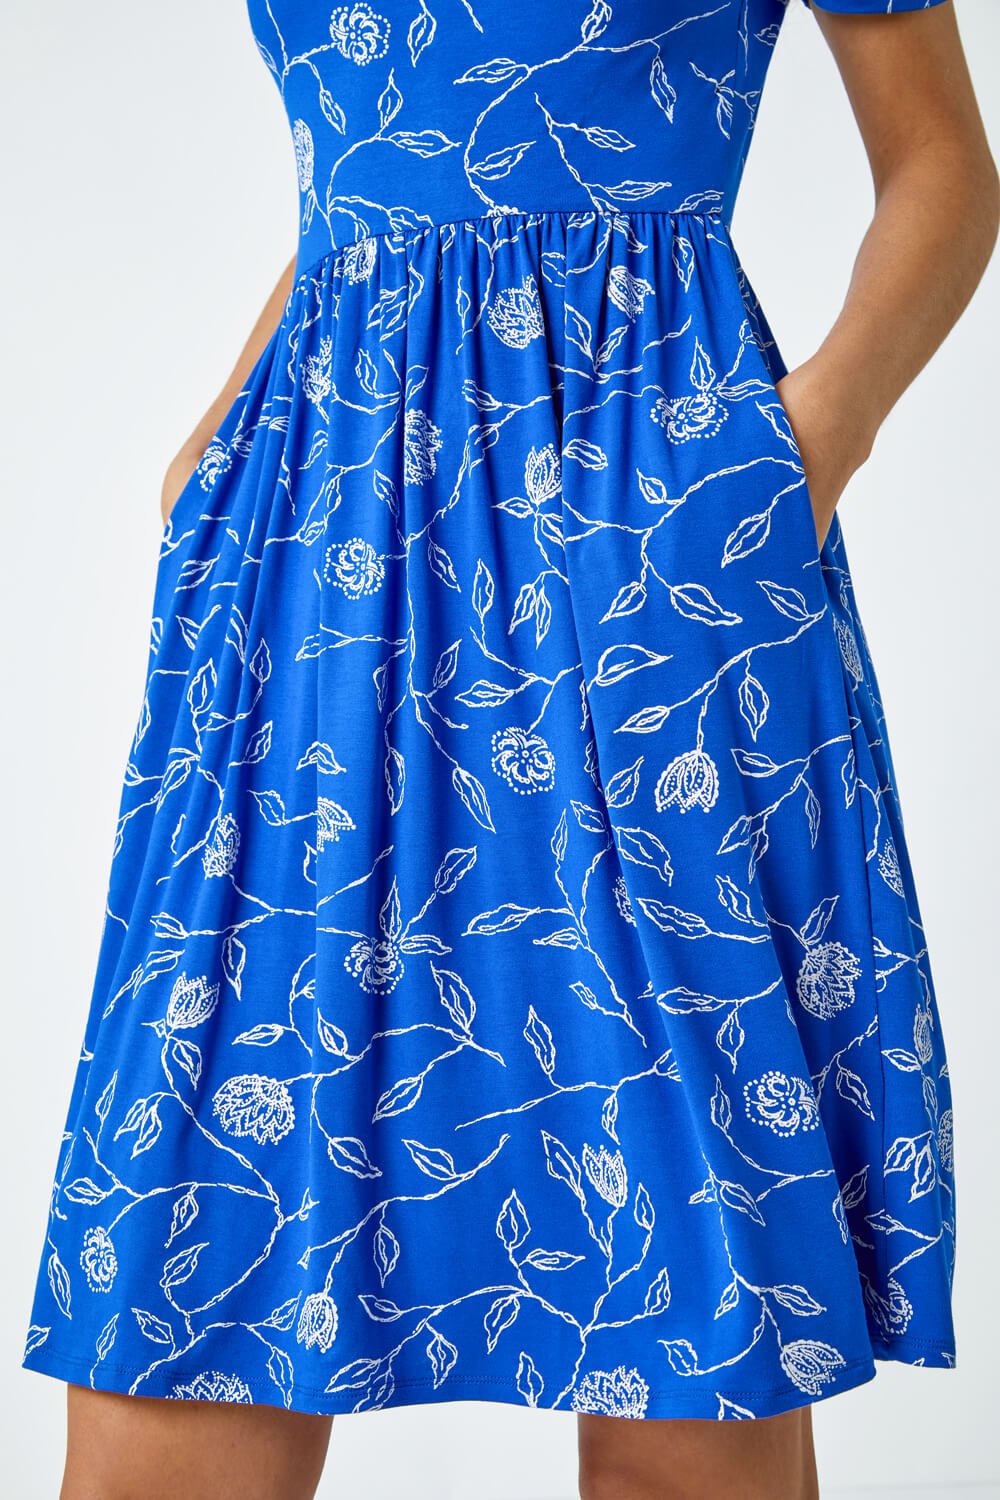 Blue Floral Pocket Stretch T-Shirt Dress, Image 5 of 5